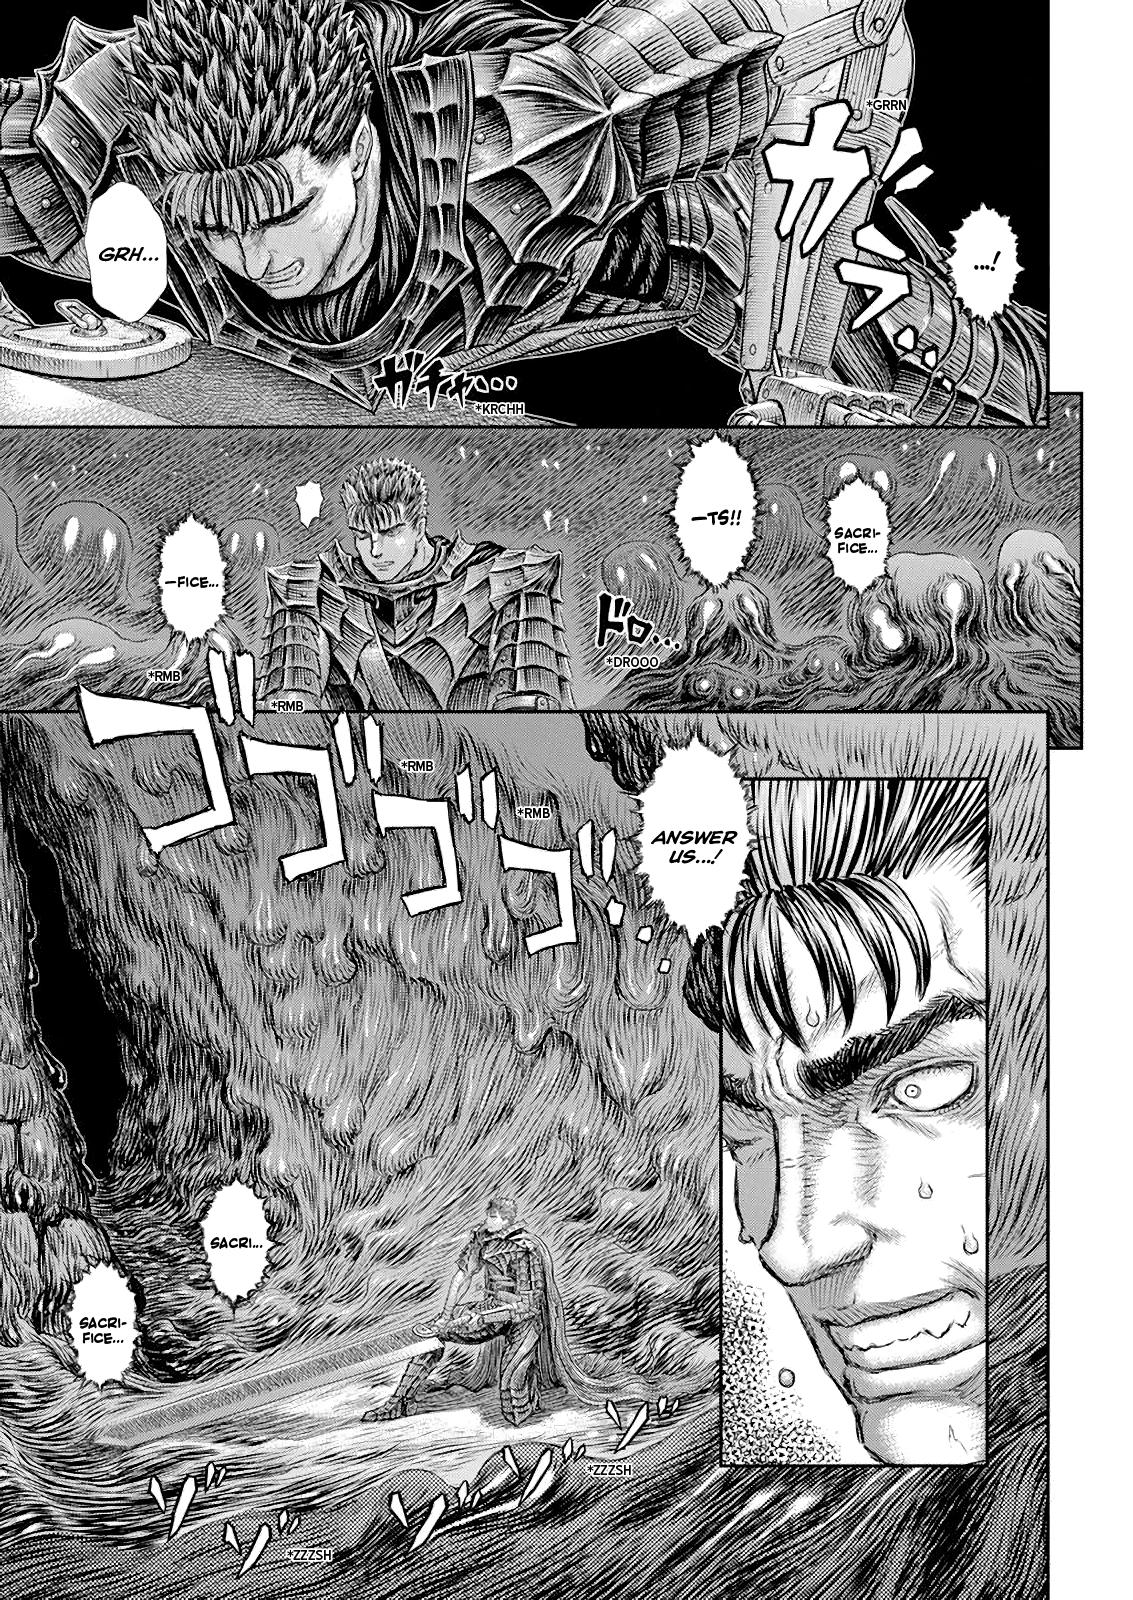 Berserk Manga Chapter 368 image 02